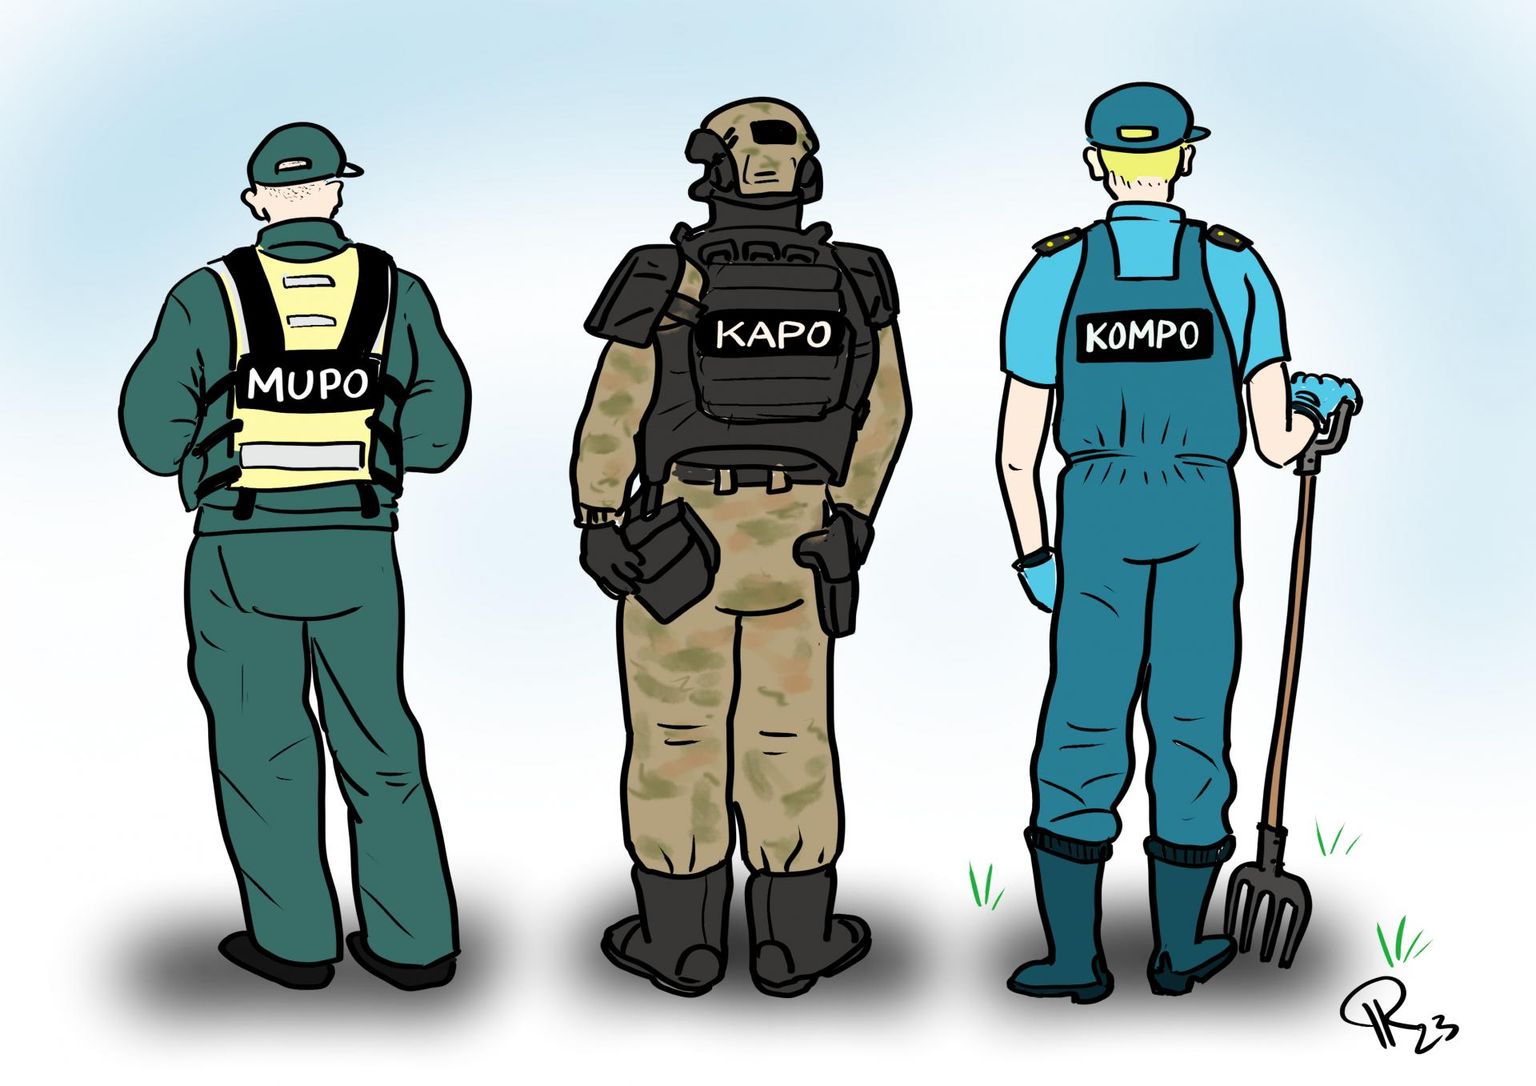 Nädala karikatuur "Kompostipolitsei".